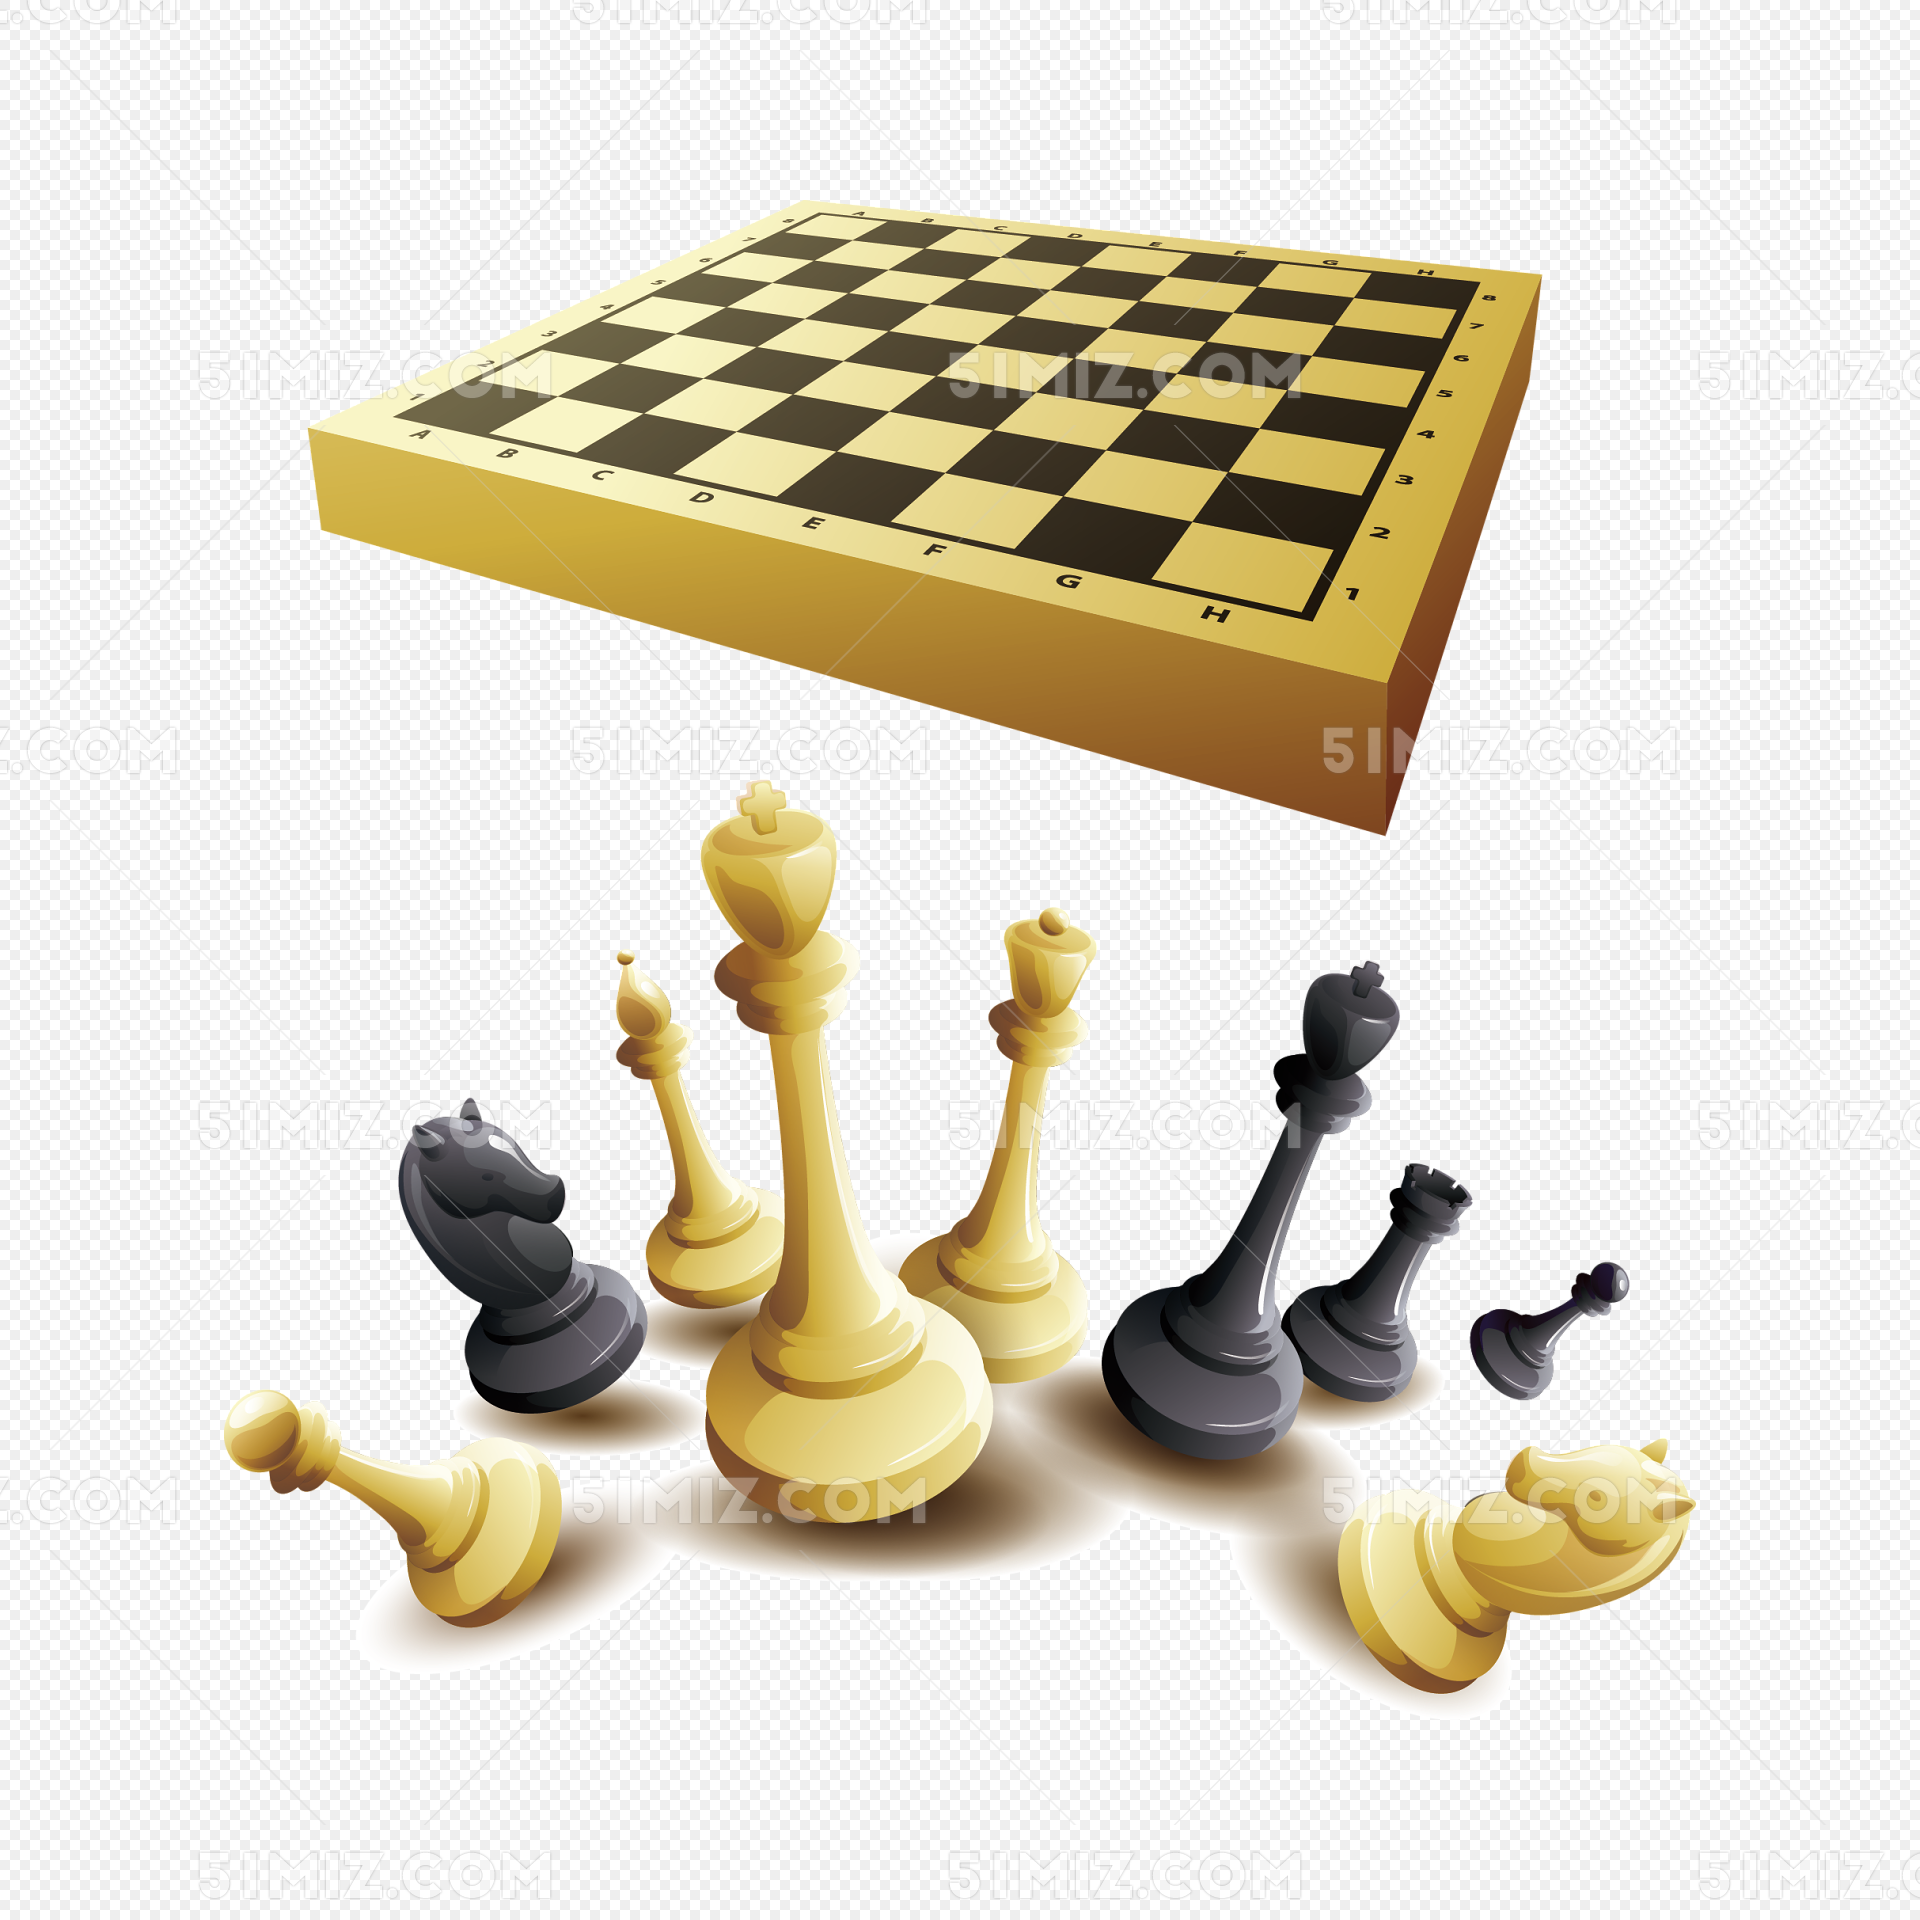 中國象棋圖片素材-JPG圖片尺寸6720 × 4480px-高清圖案501206252-zh.lovepik.com